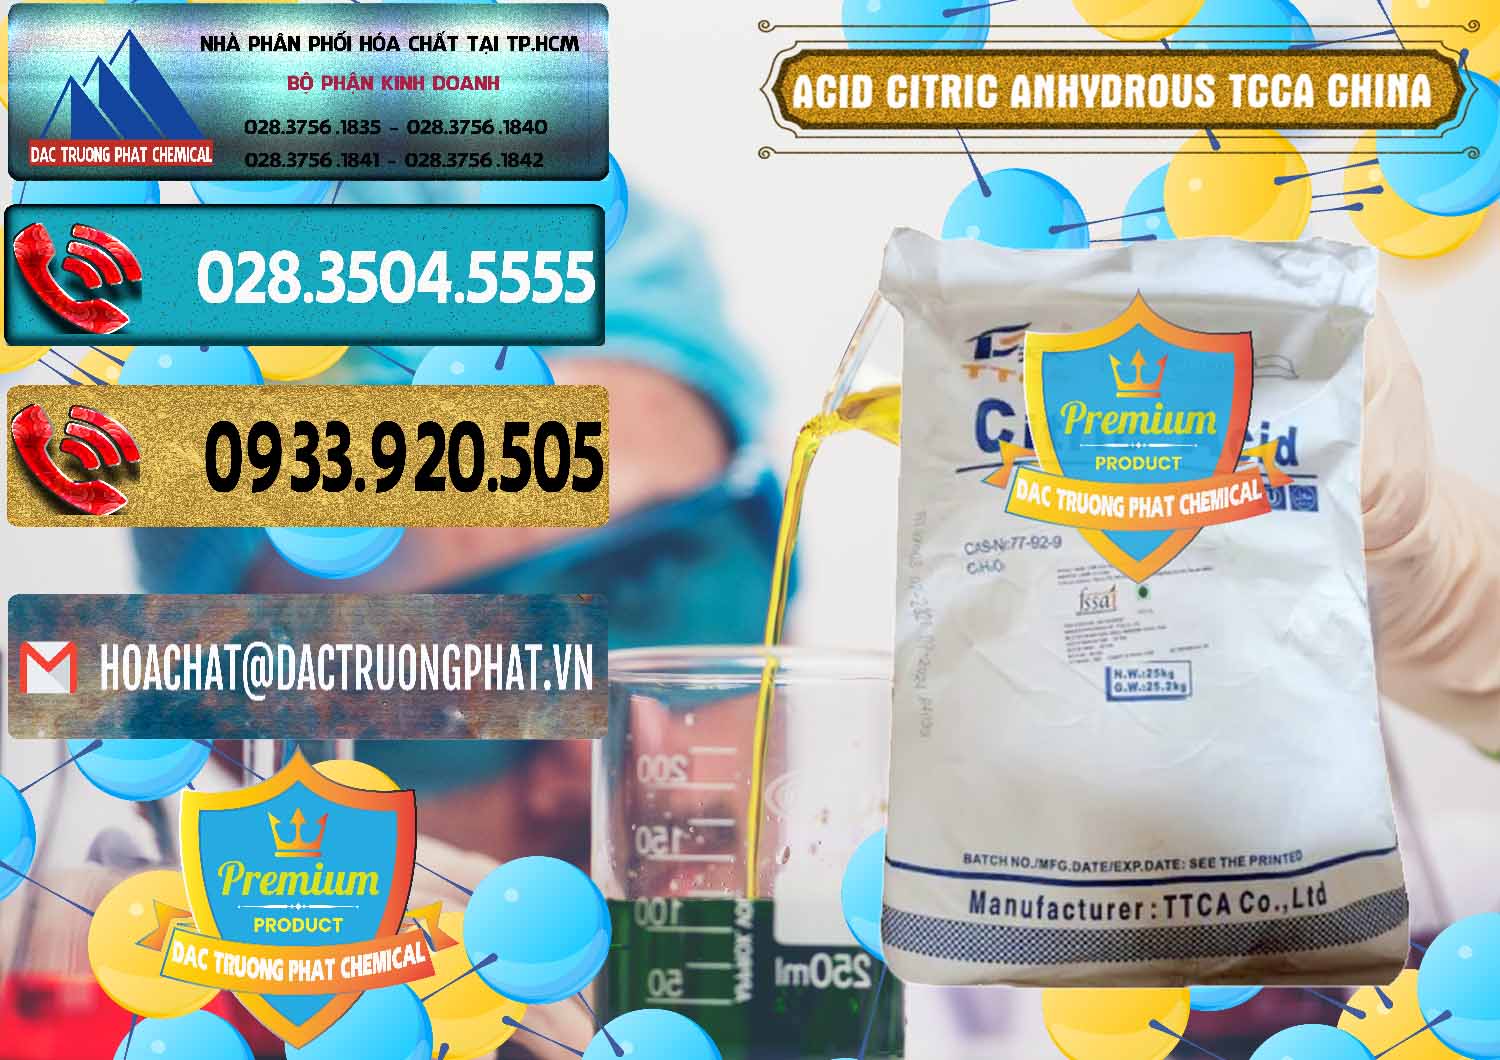 Công ty nhập khẩu và bán Acid Citric - Axit Citric Anhydrous TCCA Trung Quốc China - 0442 - Nơi chuyên cung cấp & bán hóa chất tại TP.HCM - hoachatdetnhuom.com